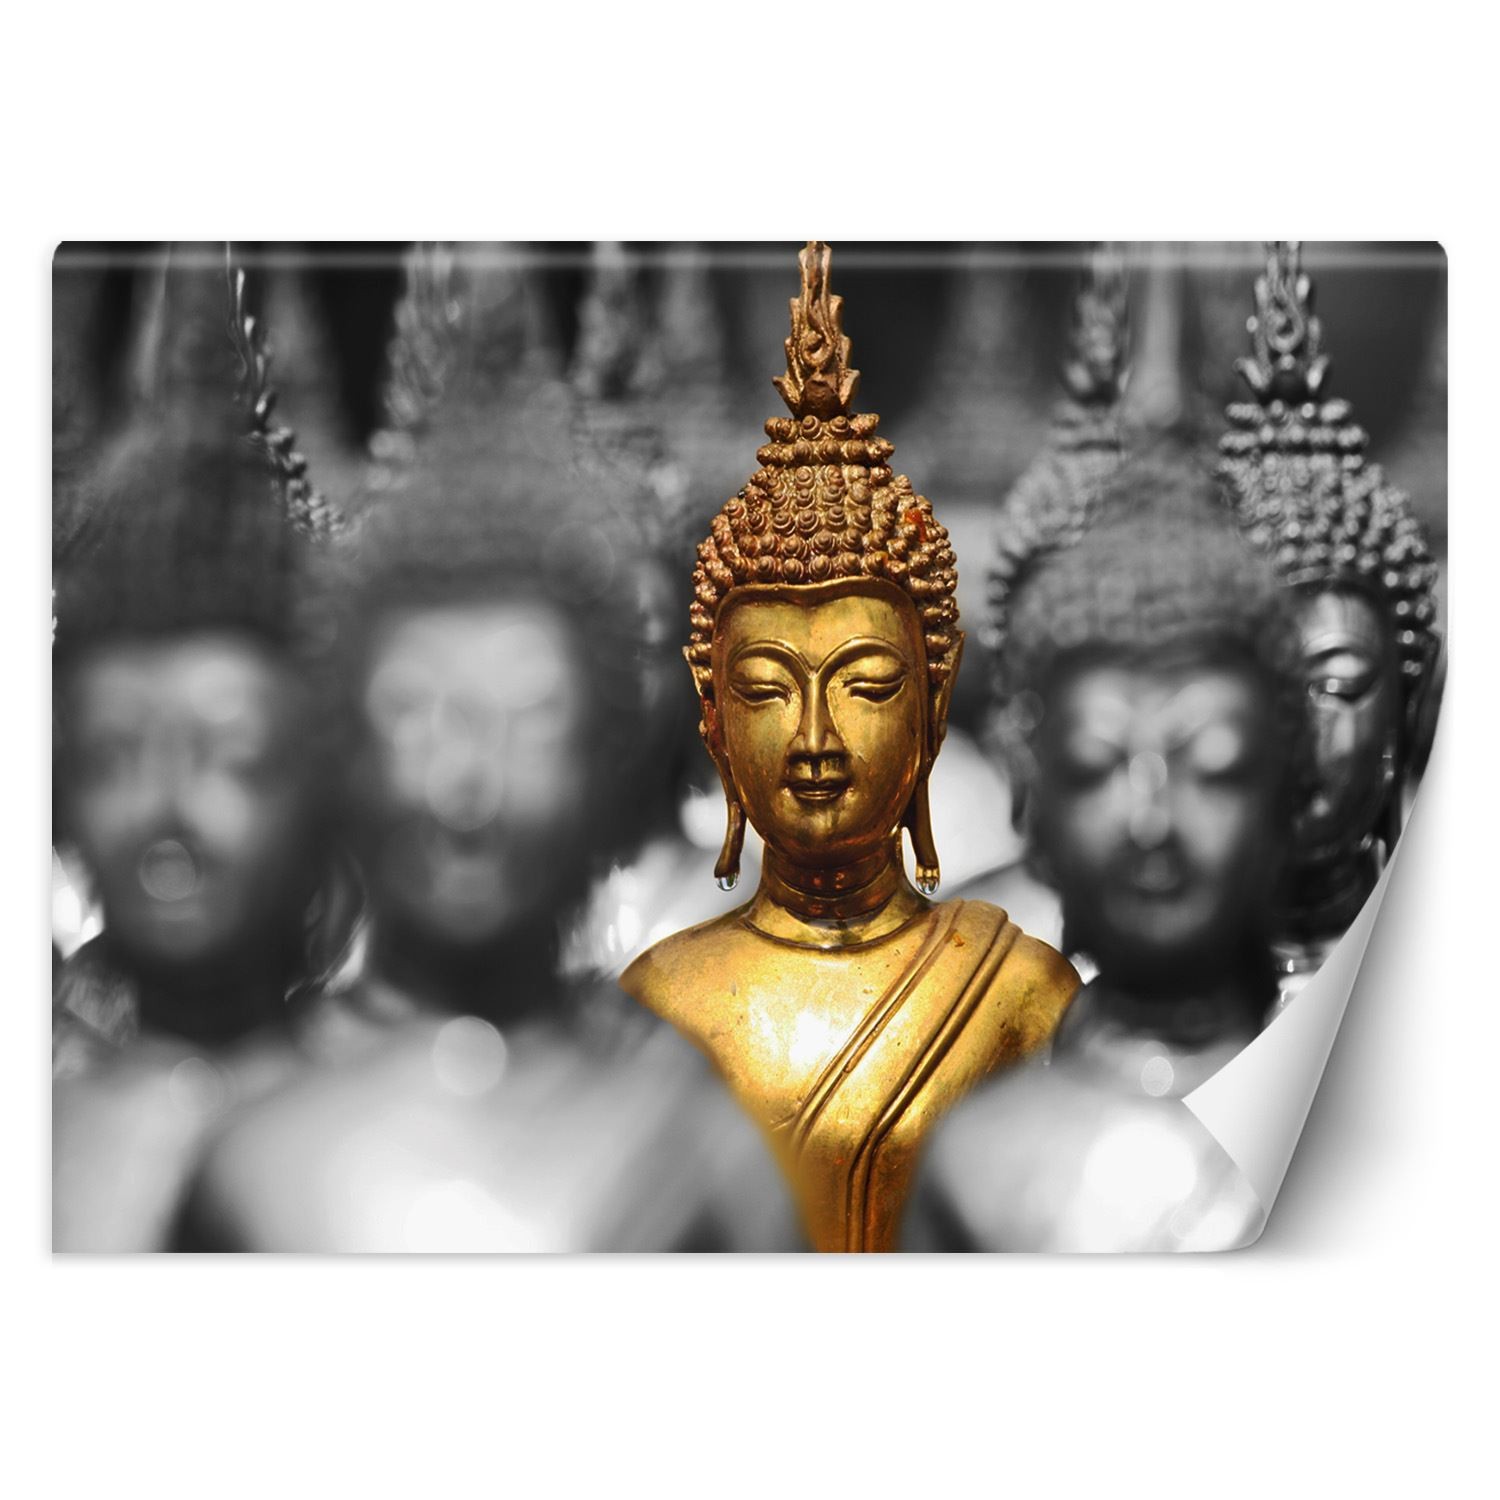 Trend24 – Behang – Gouden Boeddha – Vliesbehang – Fotobehang – Behang Woonkamer – 450x315x2 cm – Incl. behanglijm